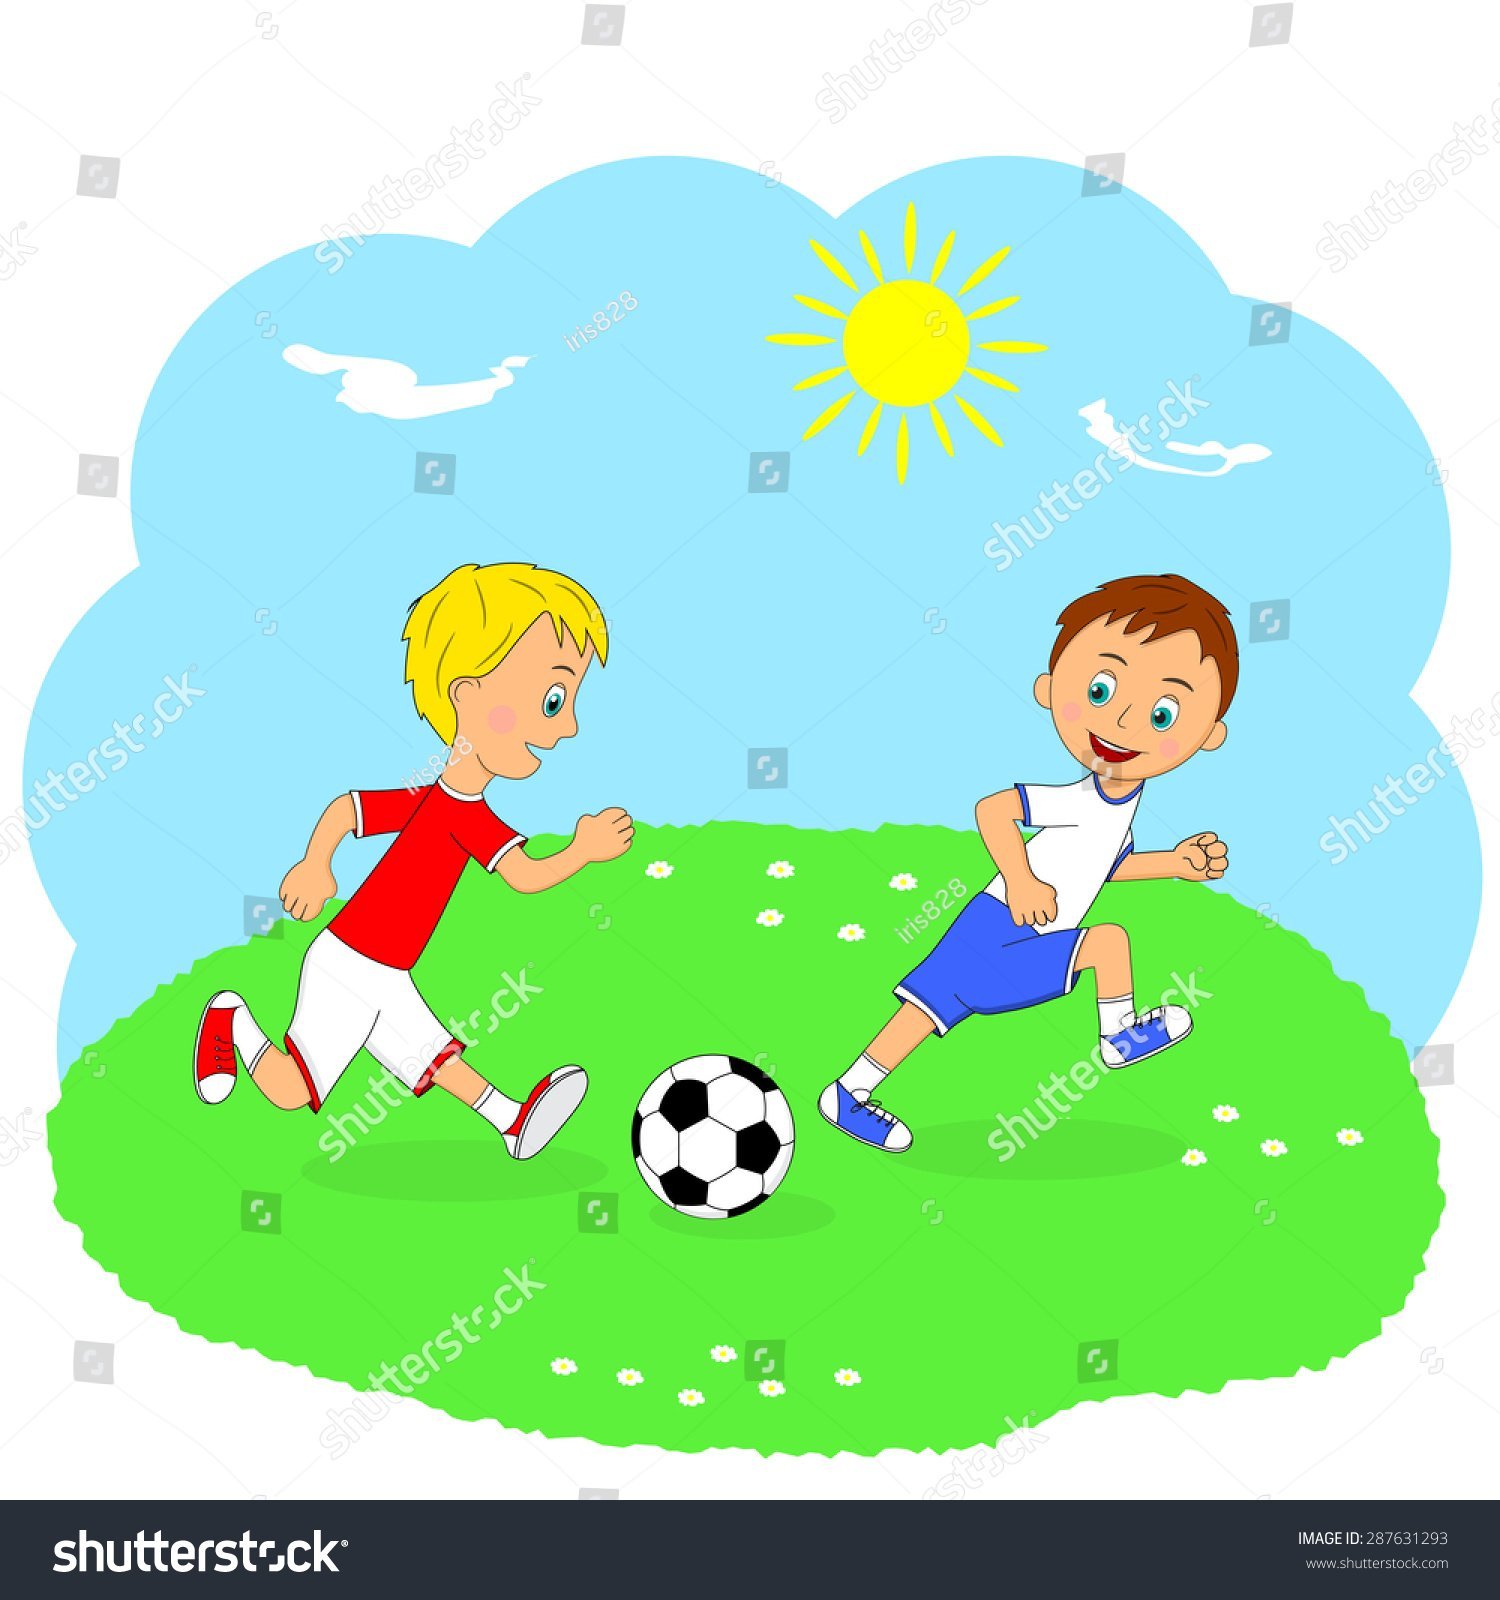 Летом играем в футбол. Дети играют в мяч. Рисунок детей играющих в футбол. Нарисовать дети играют в футбол. Игра в футбол картинки для детей.